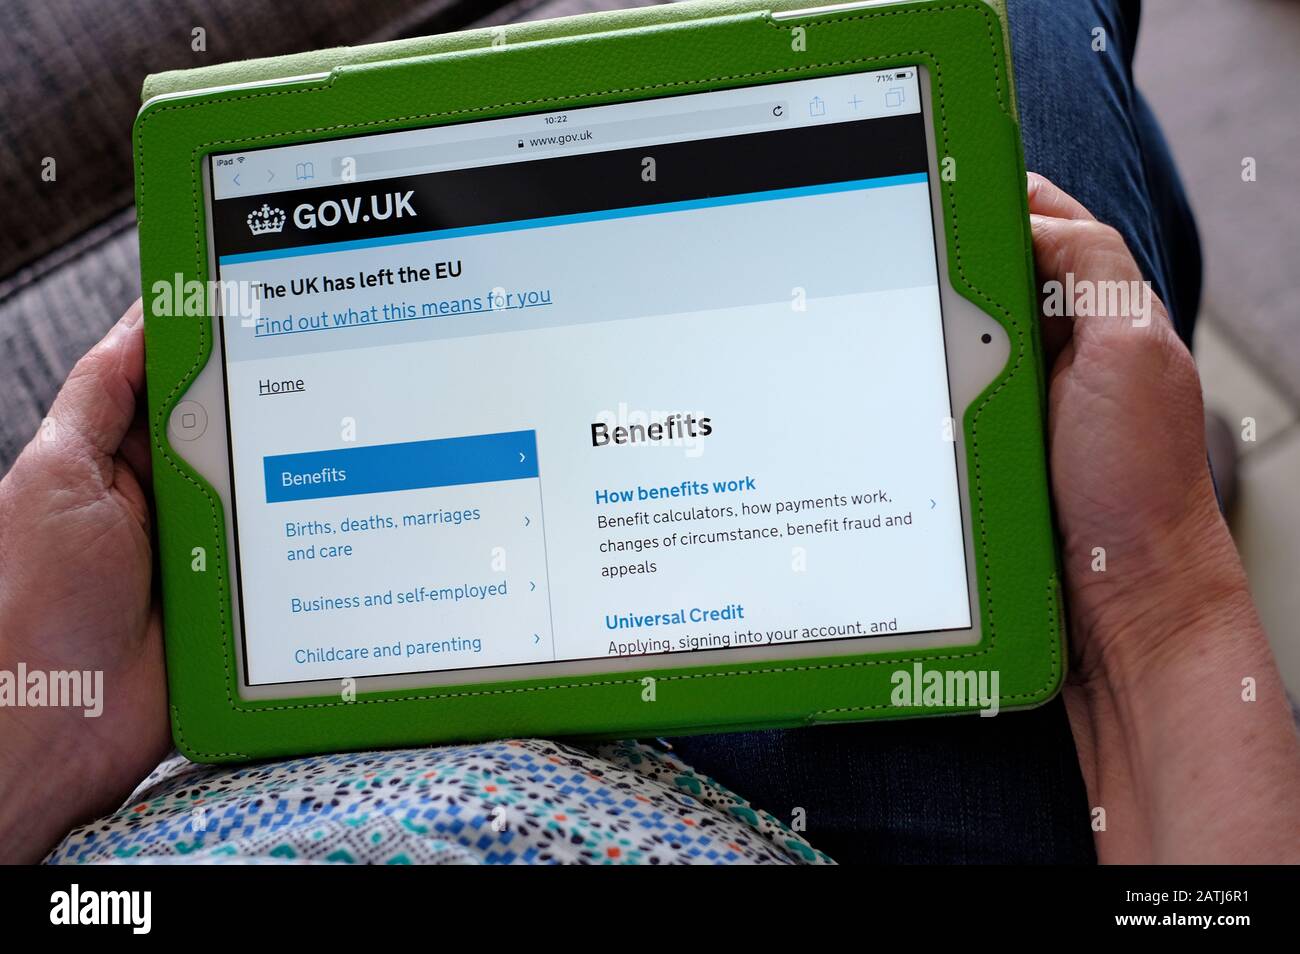 persona che detiene un tablet ipad che mostra la home page dei vantaggi di gov.uk Foto Stock